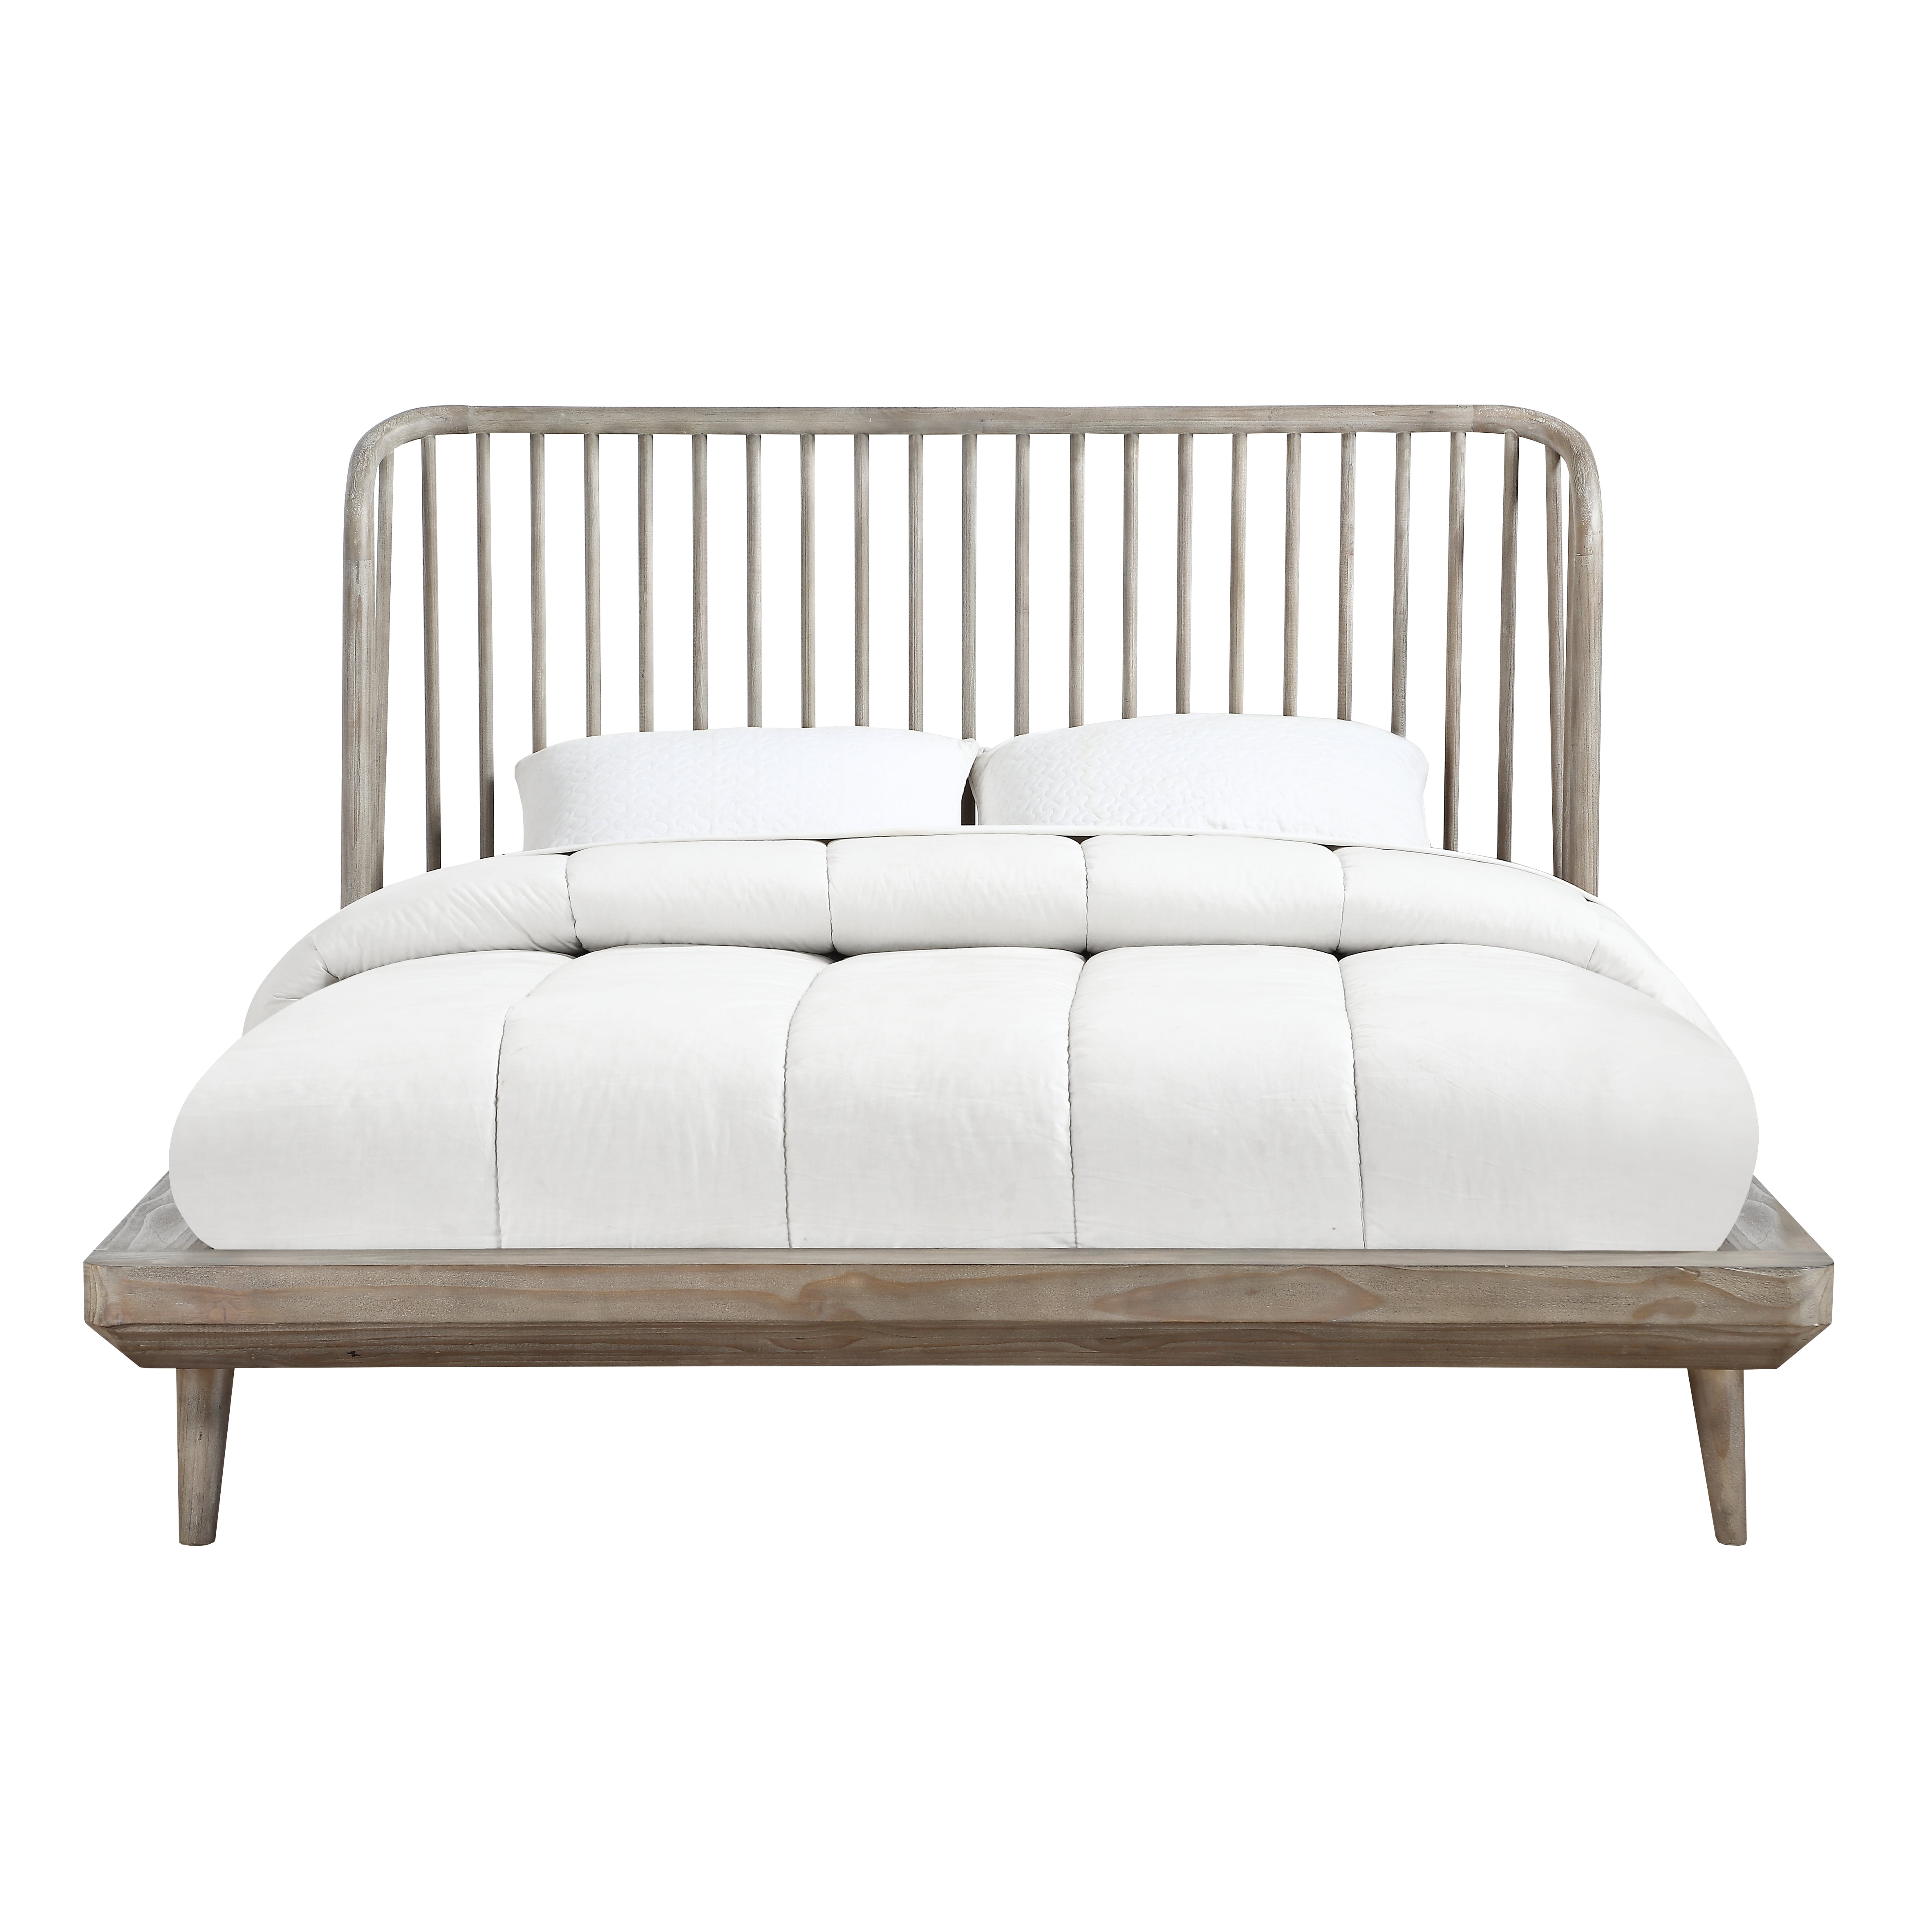 Modus Furniture Spindle Solid Wood, Cal King Platform Bed Frame Wood Slats